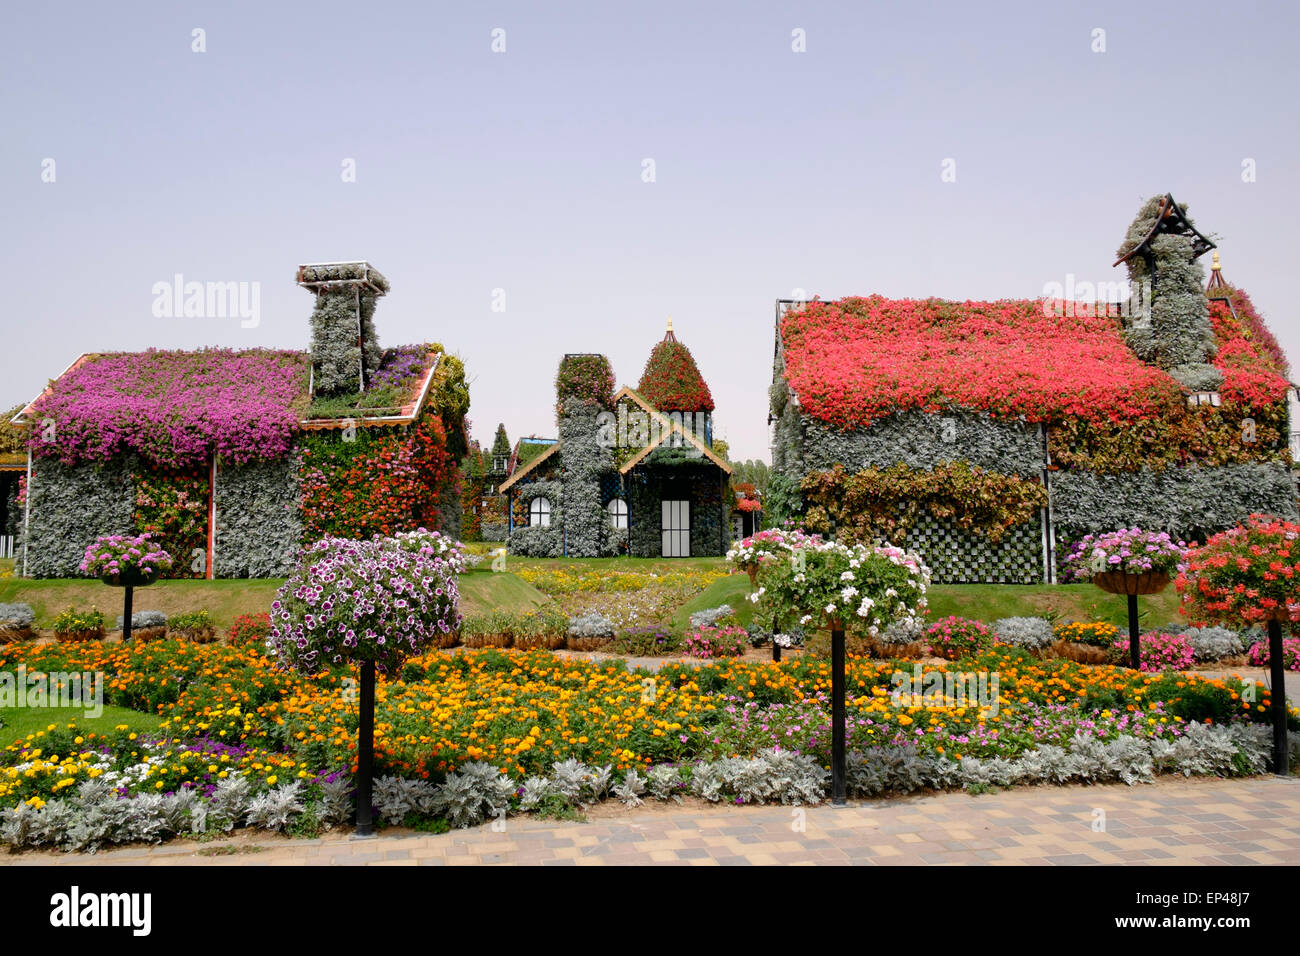 Maisons couvertes de fleurs au jardin Miracle Dubai Emirats Arabes Unis Banque D'Images